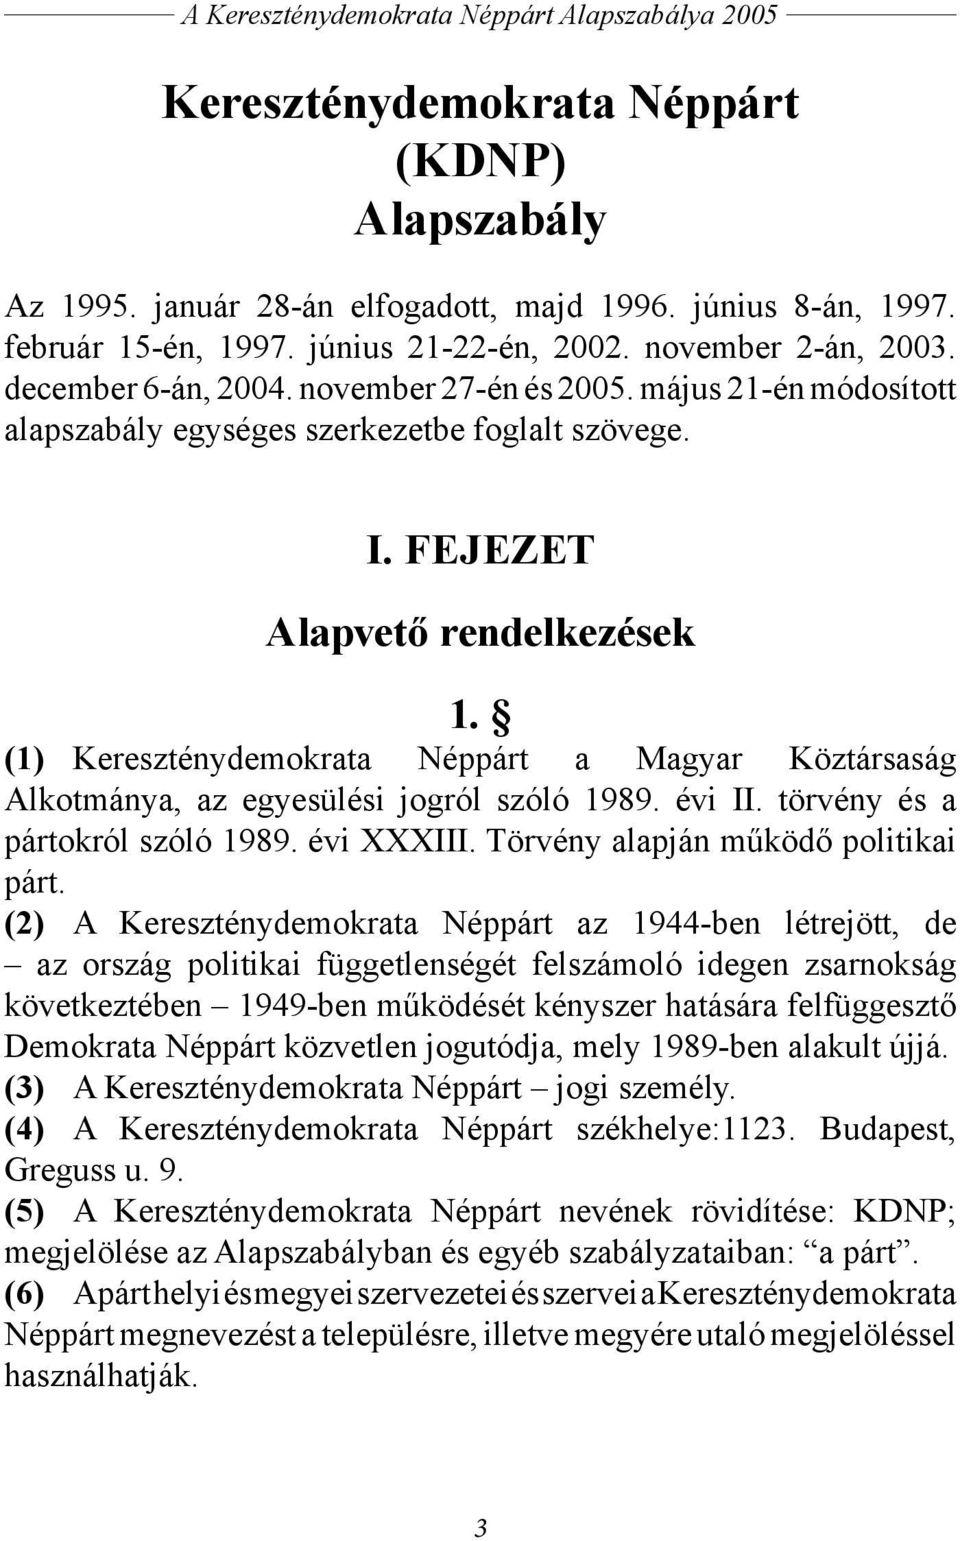 (1) Kereszténydemokrata Néppárt a Magyar Köztársaság Alkotmánya, az egyesülési jogról szóló 1989. évi II. törvény és a pártokról szóló 1989. évi XXXIII. Törvény alapján működő politikai párt.